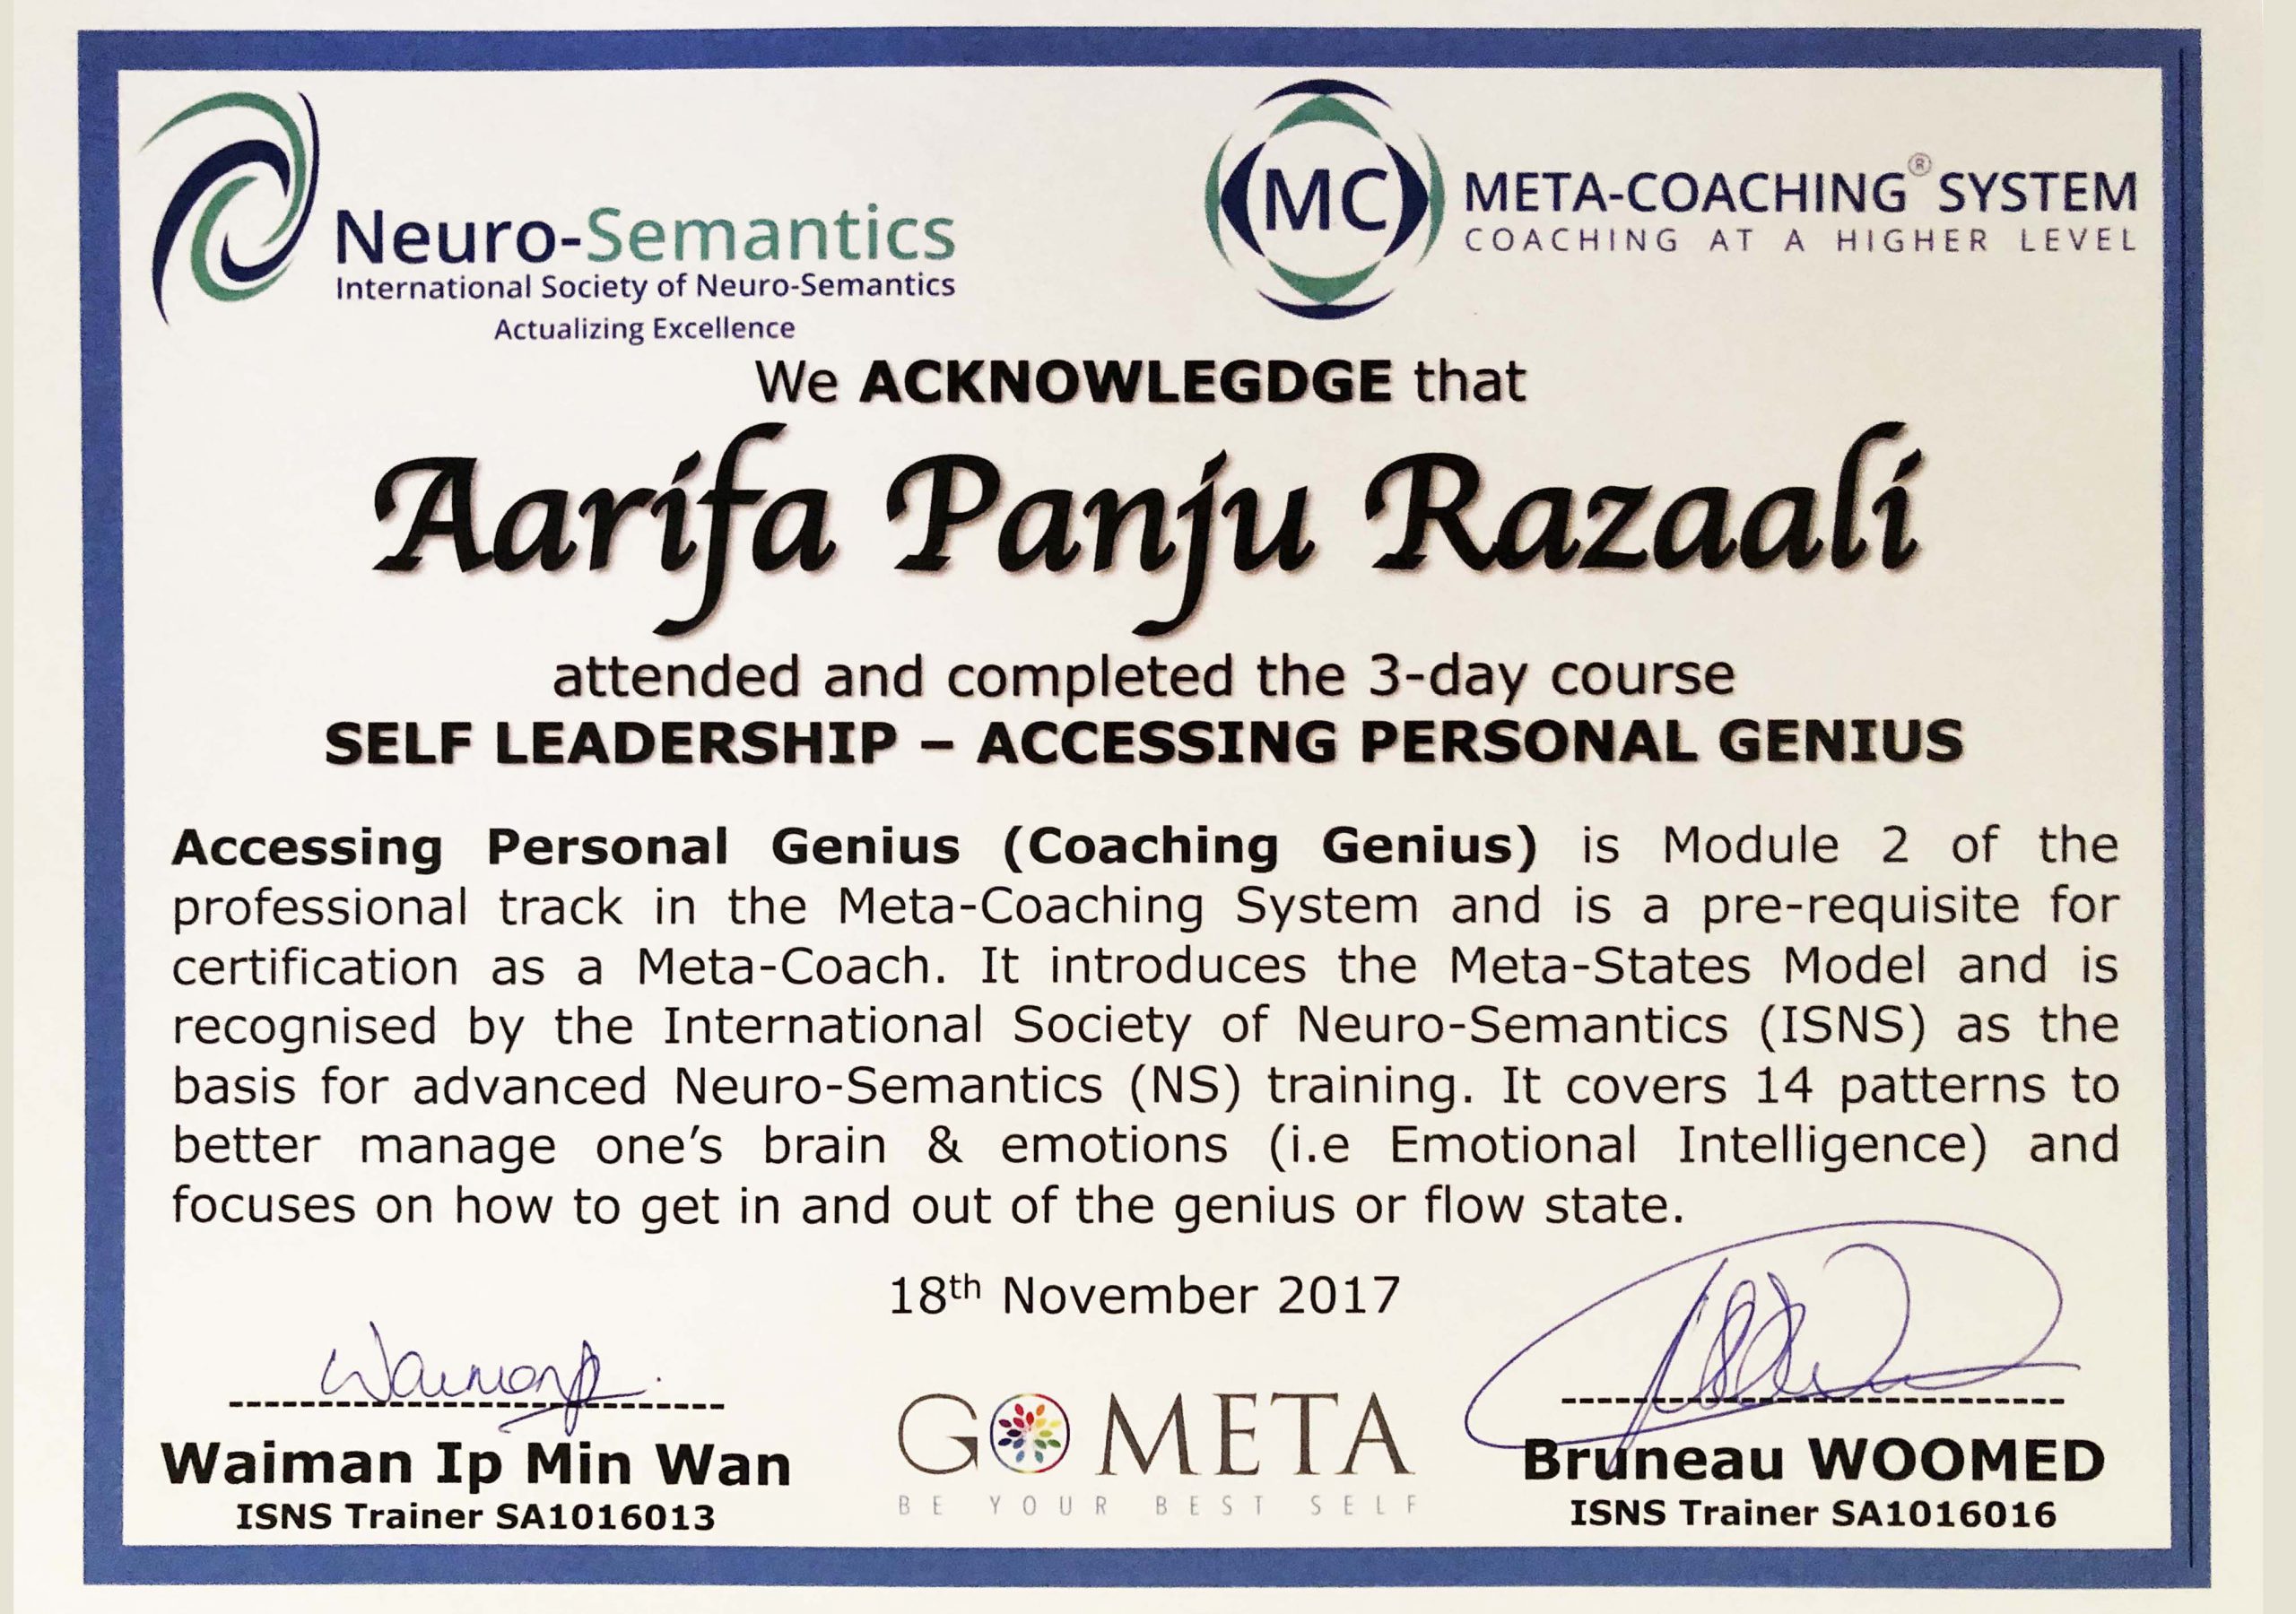 Self leadership - Accessing personal genius